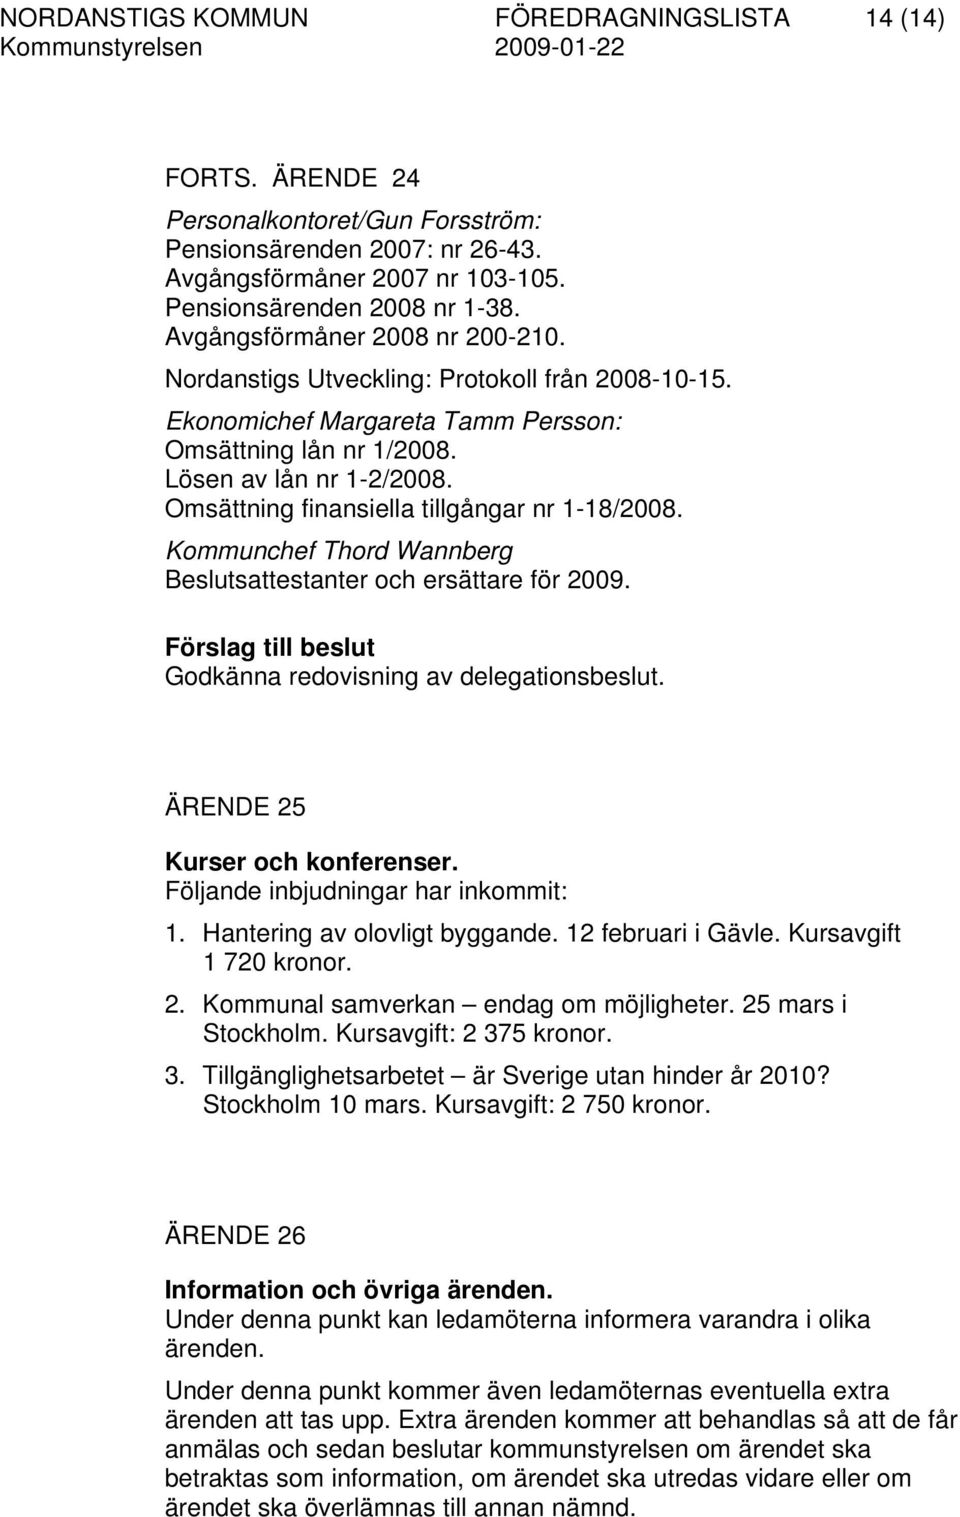 Omsättning finansiella tillgångar nr 1-18/2008. Kommunchef Thord Wannberg Beslutsattestanter och ersättare för 2009. Förslag till beslut Godkänna redovisning av delegationsbeslut.